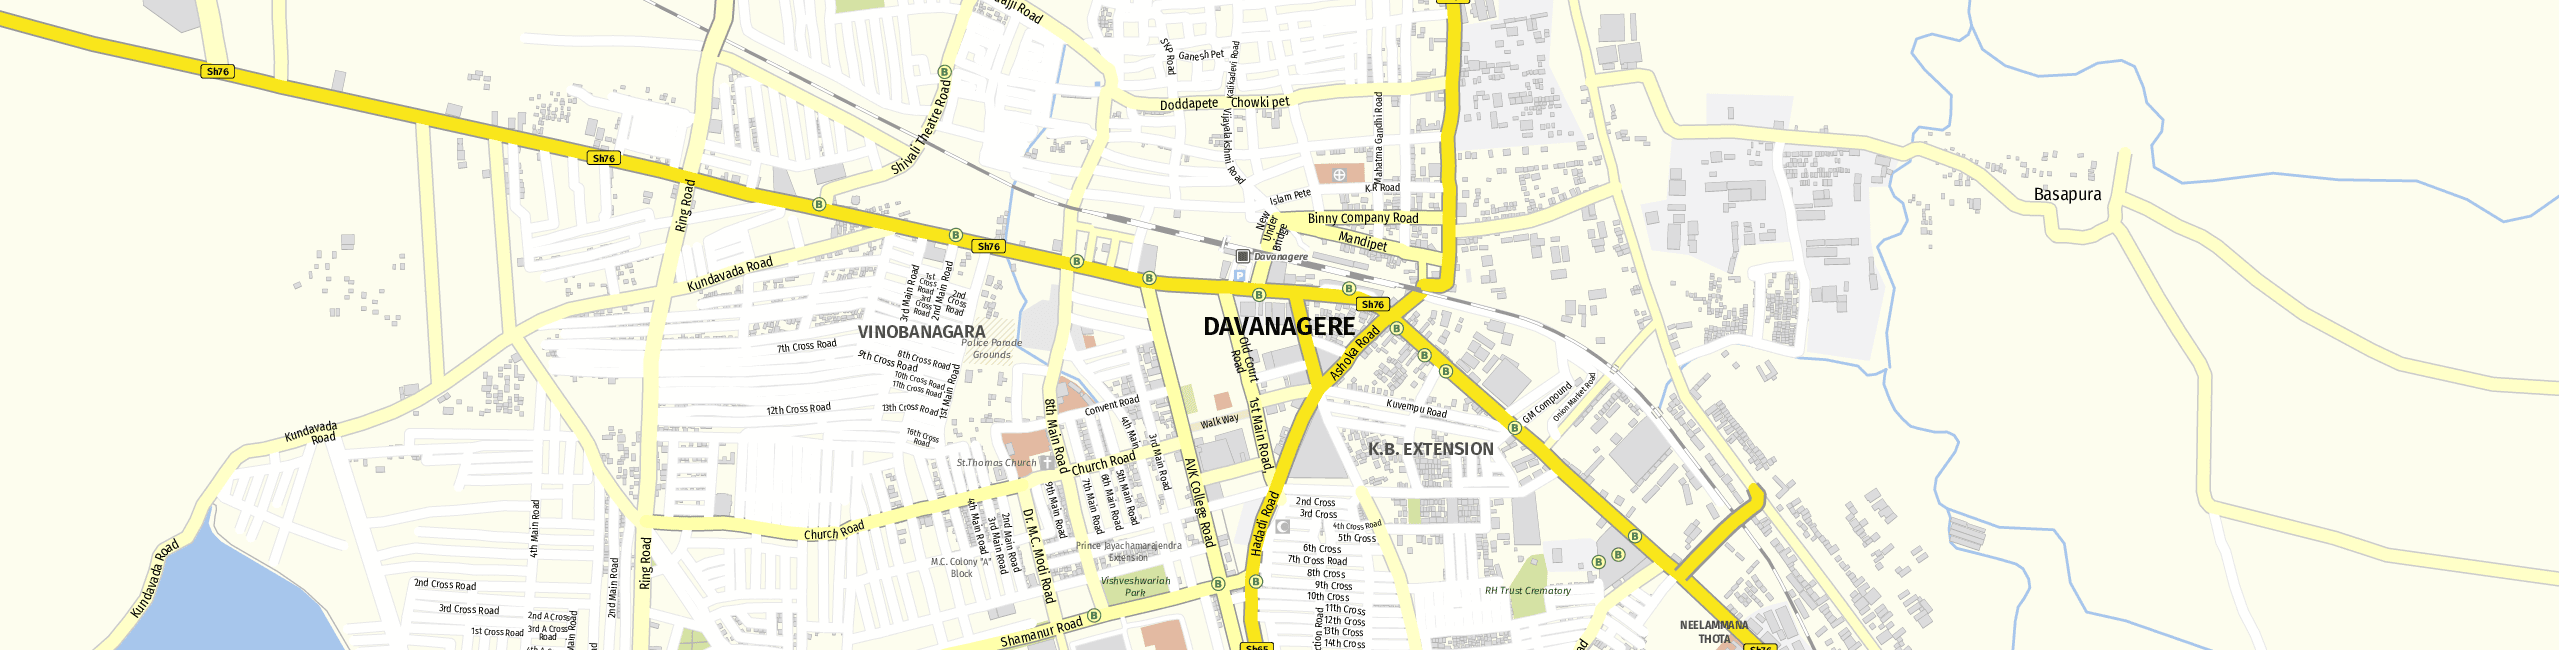 Stadtplan Davanagere zum Downloaden.